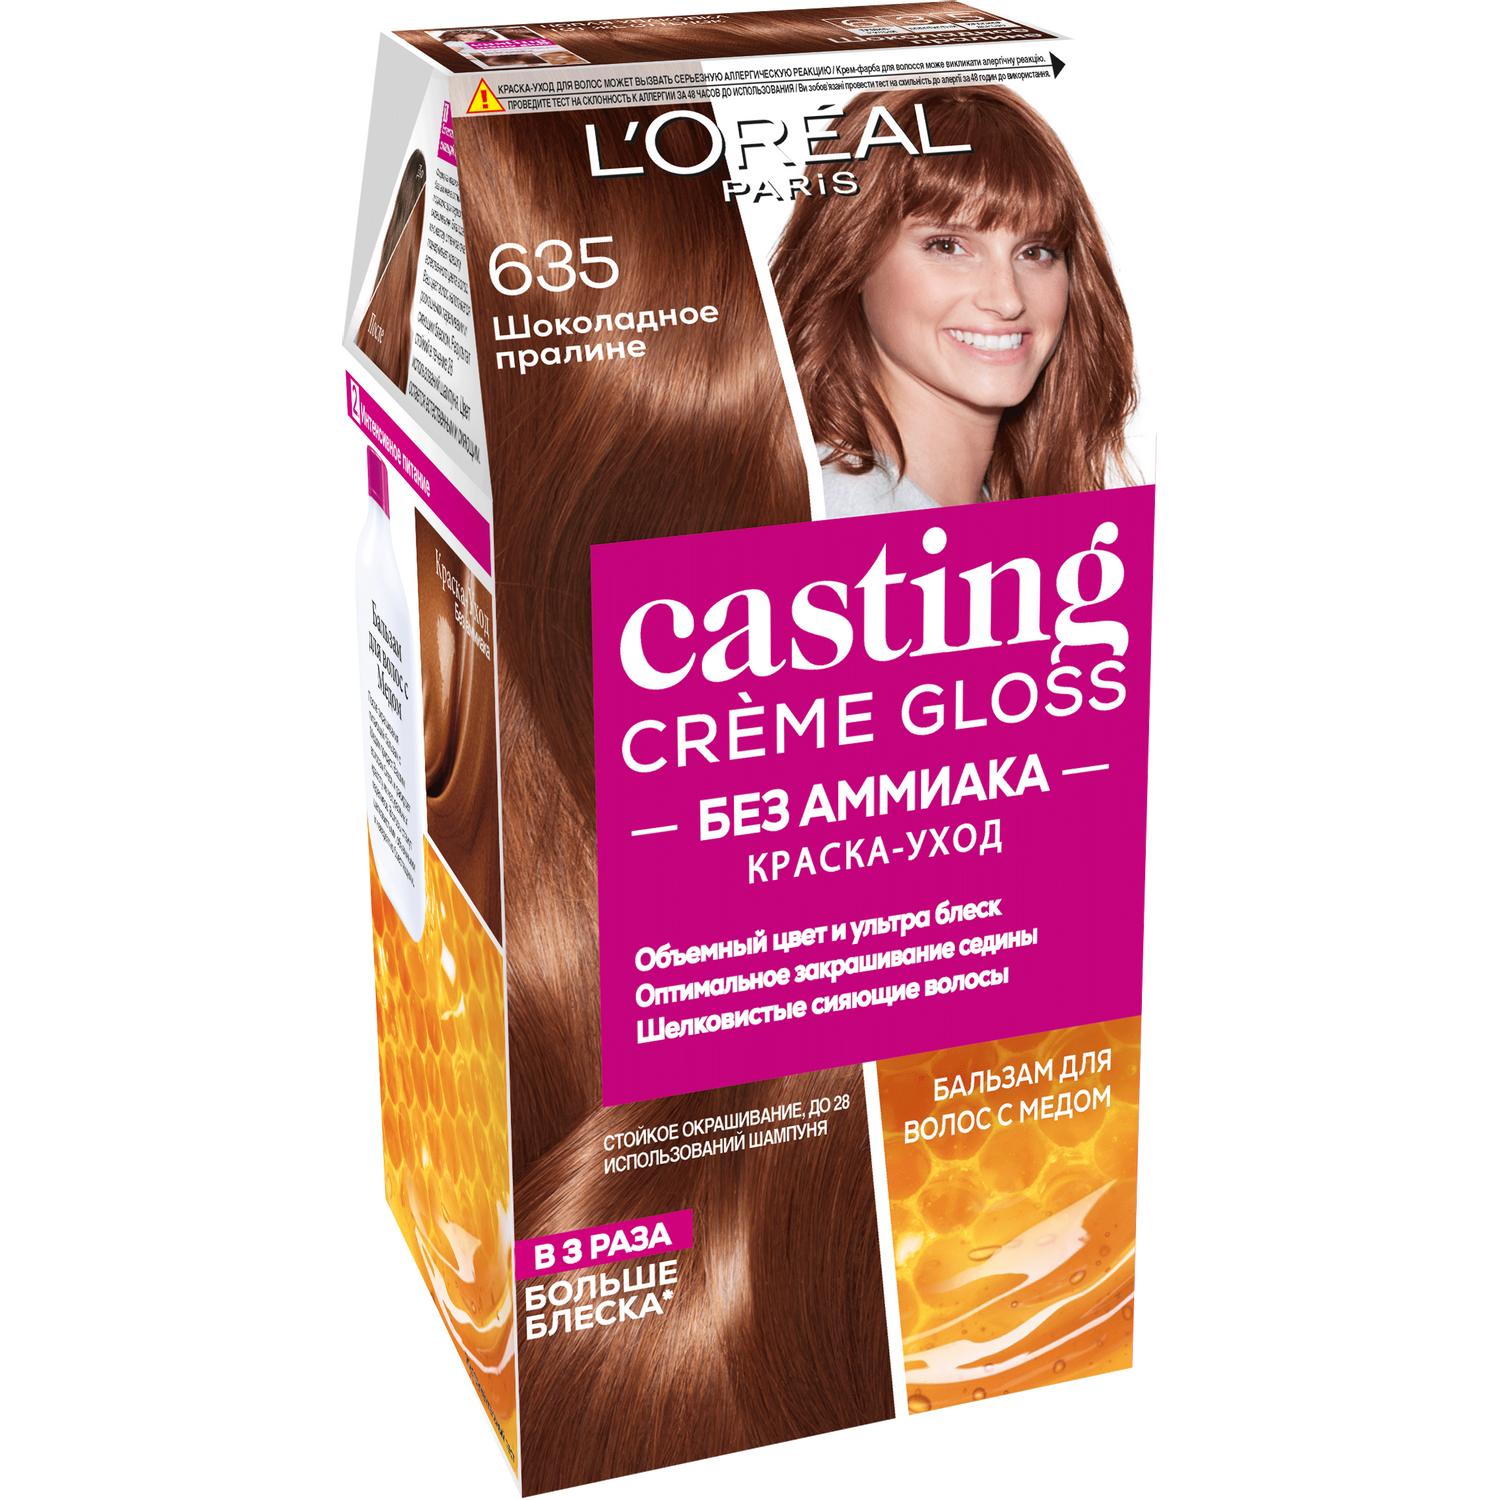 Краска для волос L'Oreal Paris Casting Creme Gloss 635 Шоколадное пралине маска для волос l oreal paris elseve полное восстановление 5 300 мл